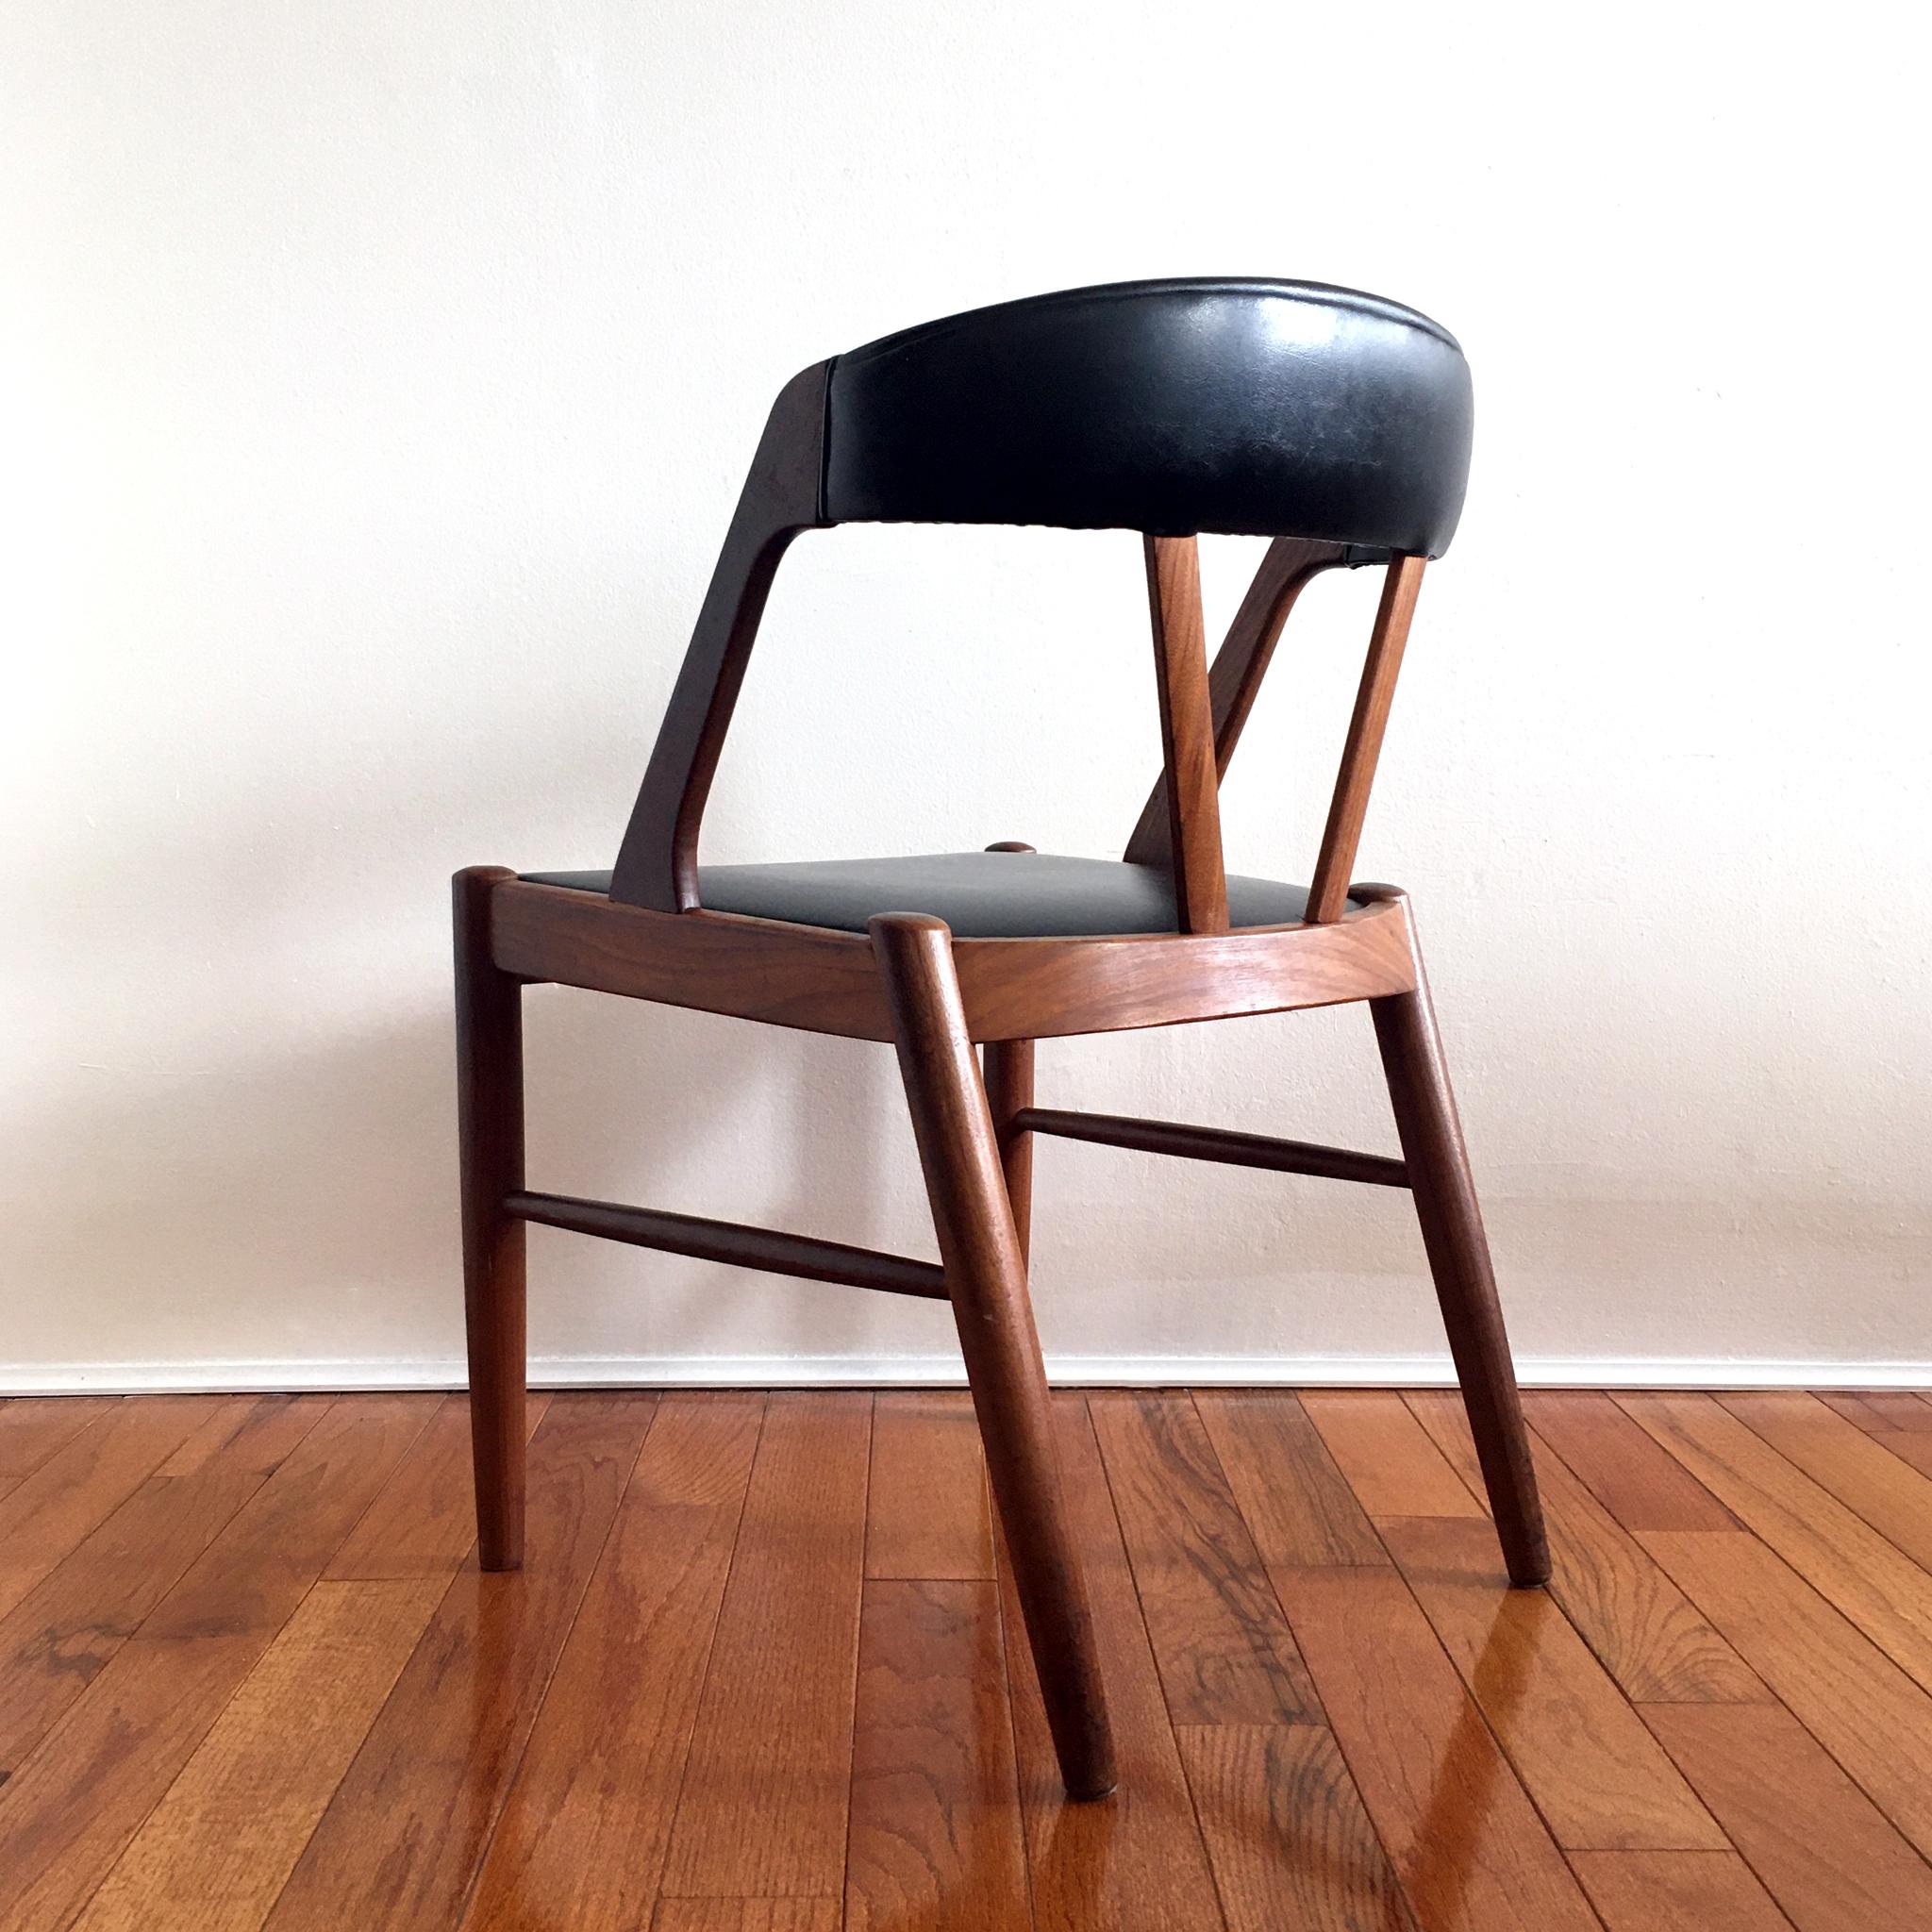 Danish 1960's Kai Kristiansen Style Midcentury Teak and Black Chair